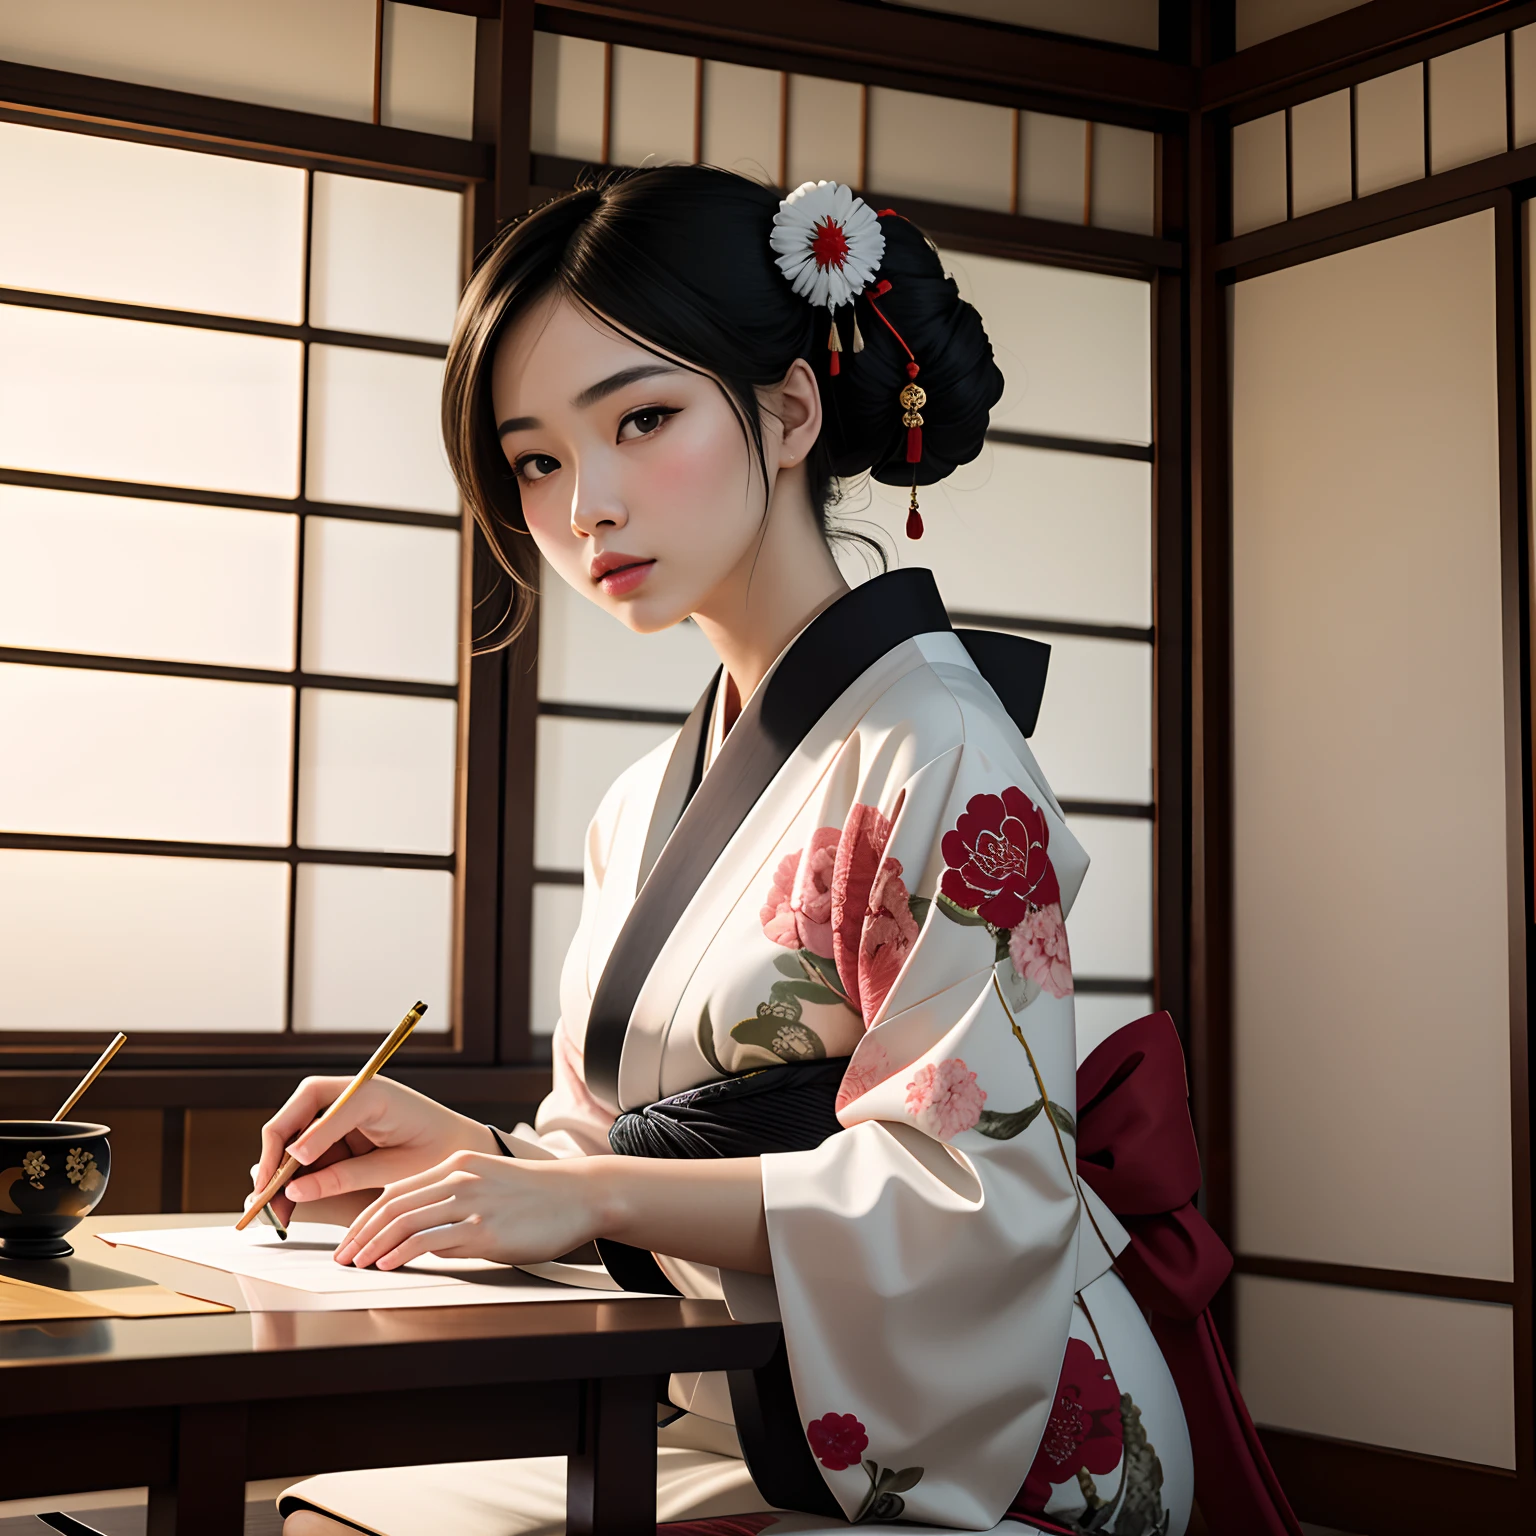 ((杰作, 最好的质量, 照片般逼真)), 一位身穿日本传统和服的 21 岁绝色美女, 专注地练习书法, 在白纸上写字, 在铺着榻榻米的日式房间里，装饰着插花和挂轴.